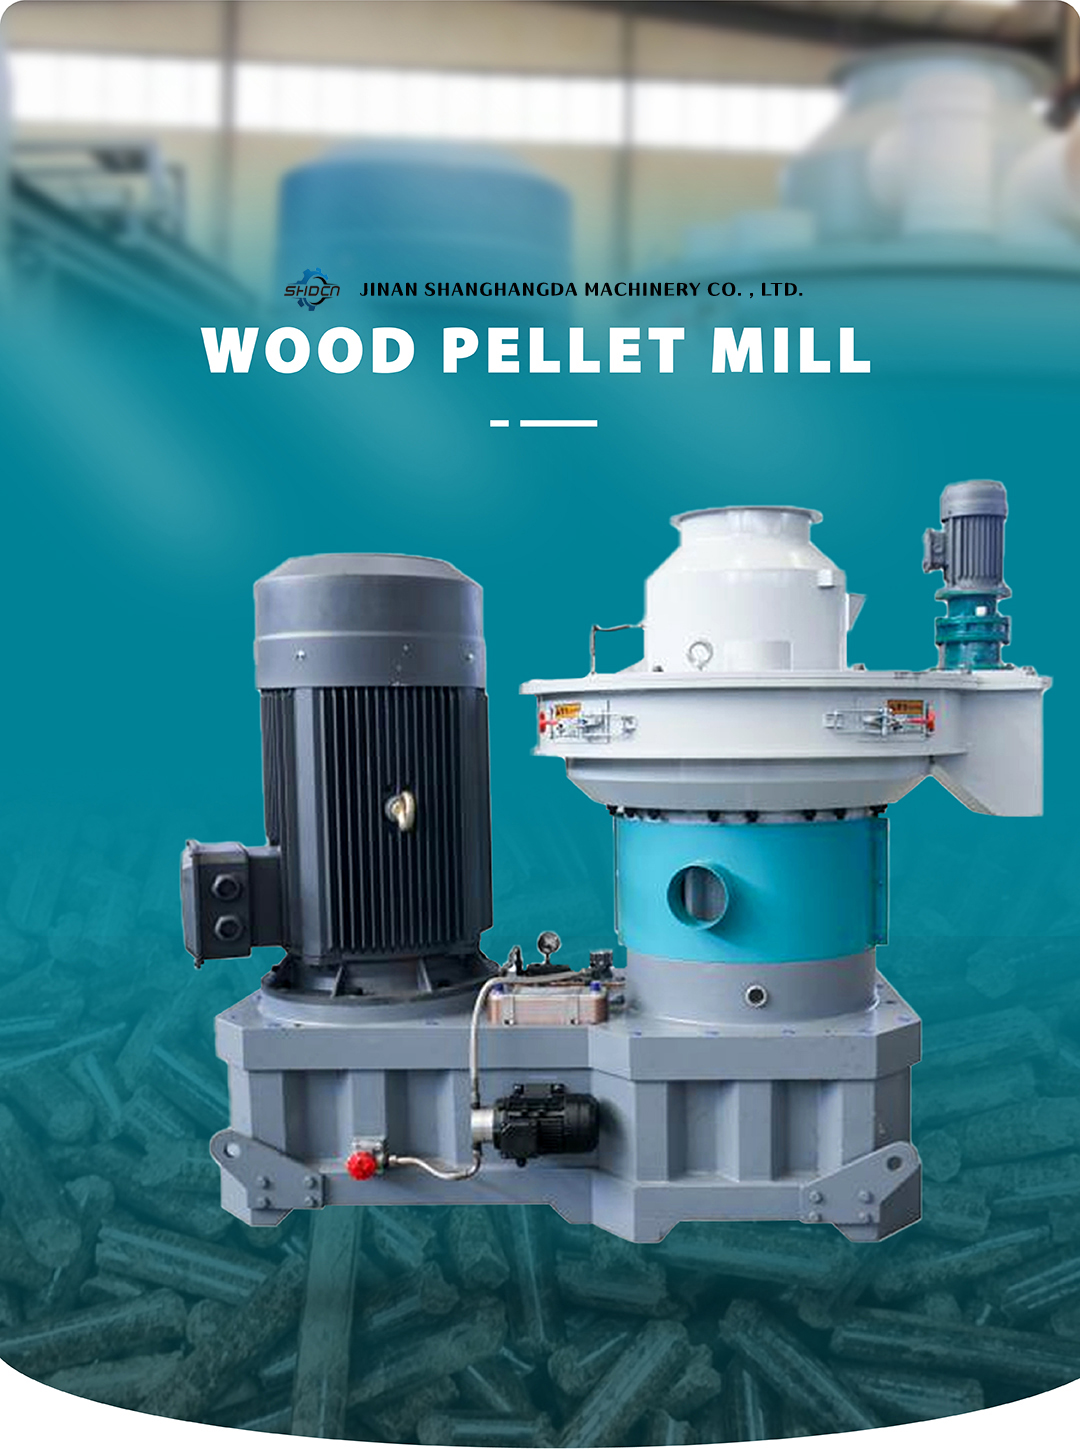 SHD Wood Pellet Mill.jpg